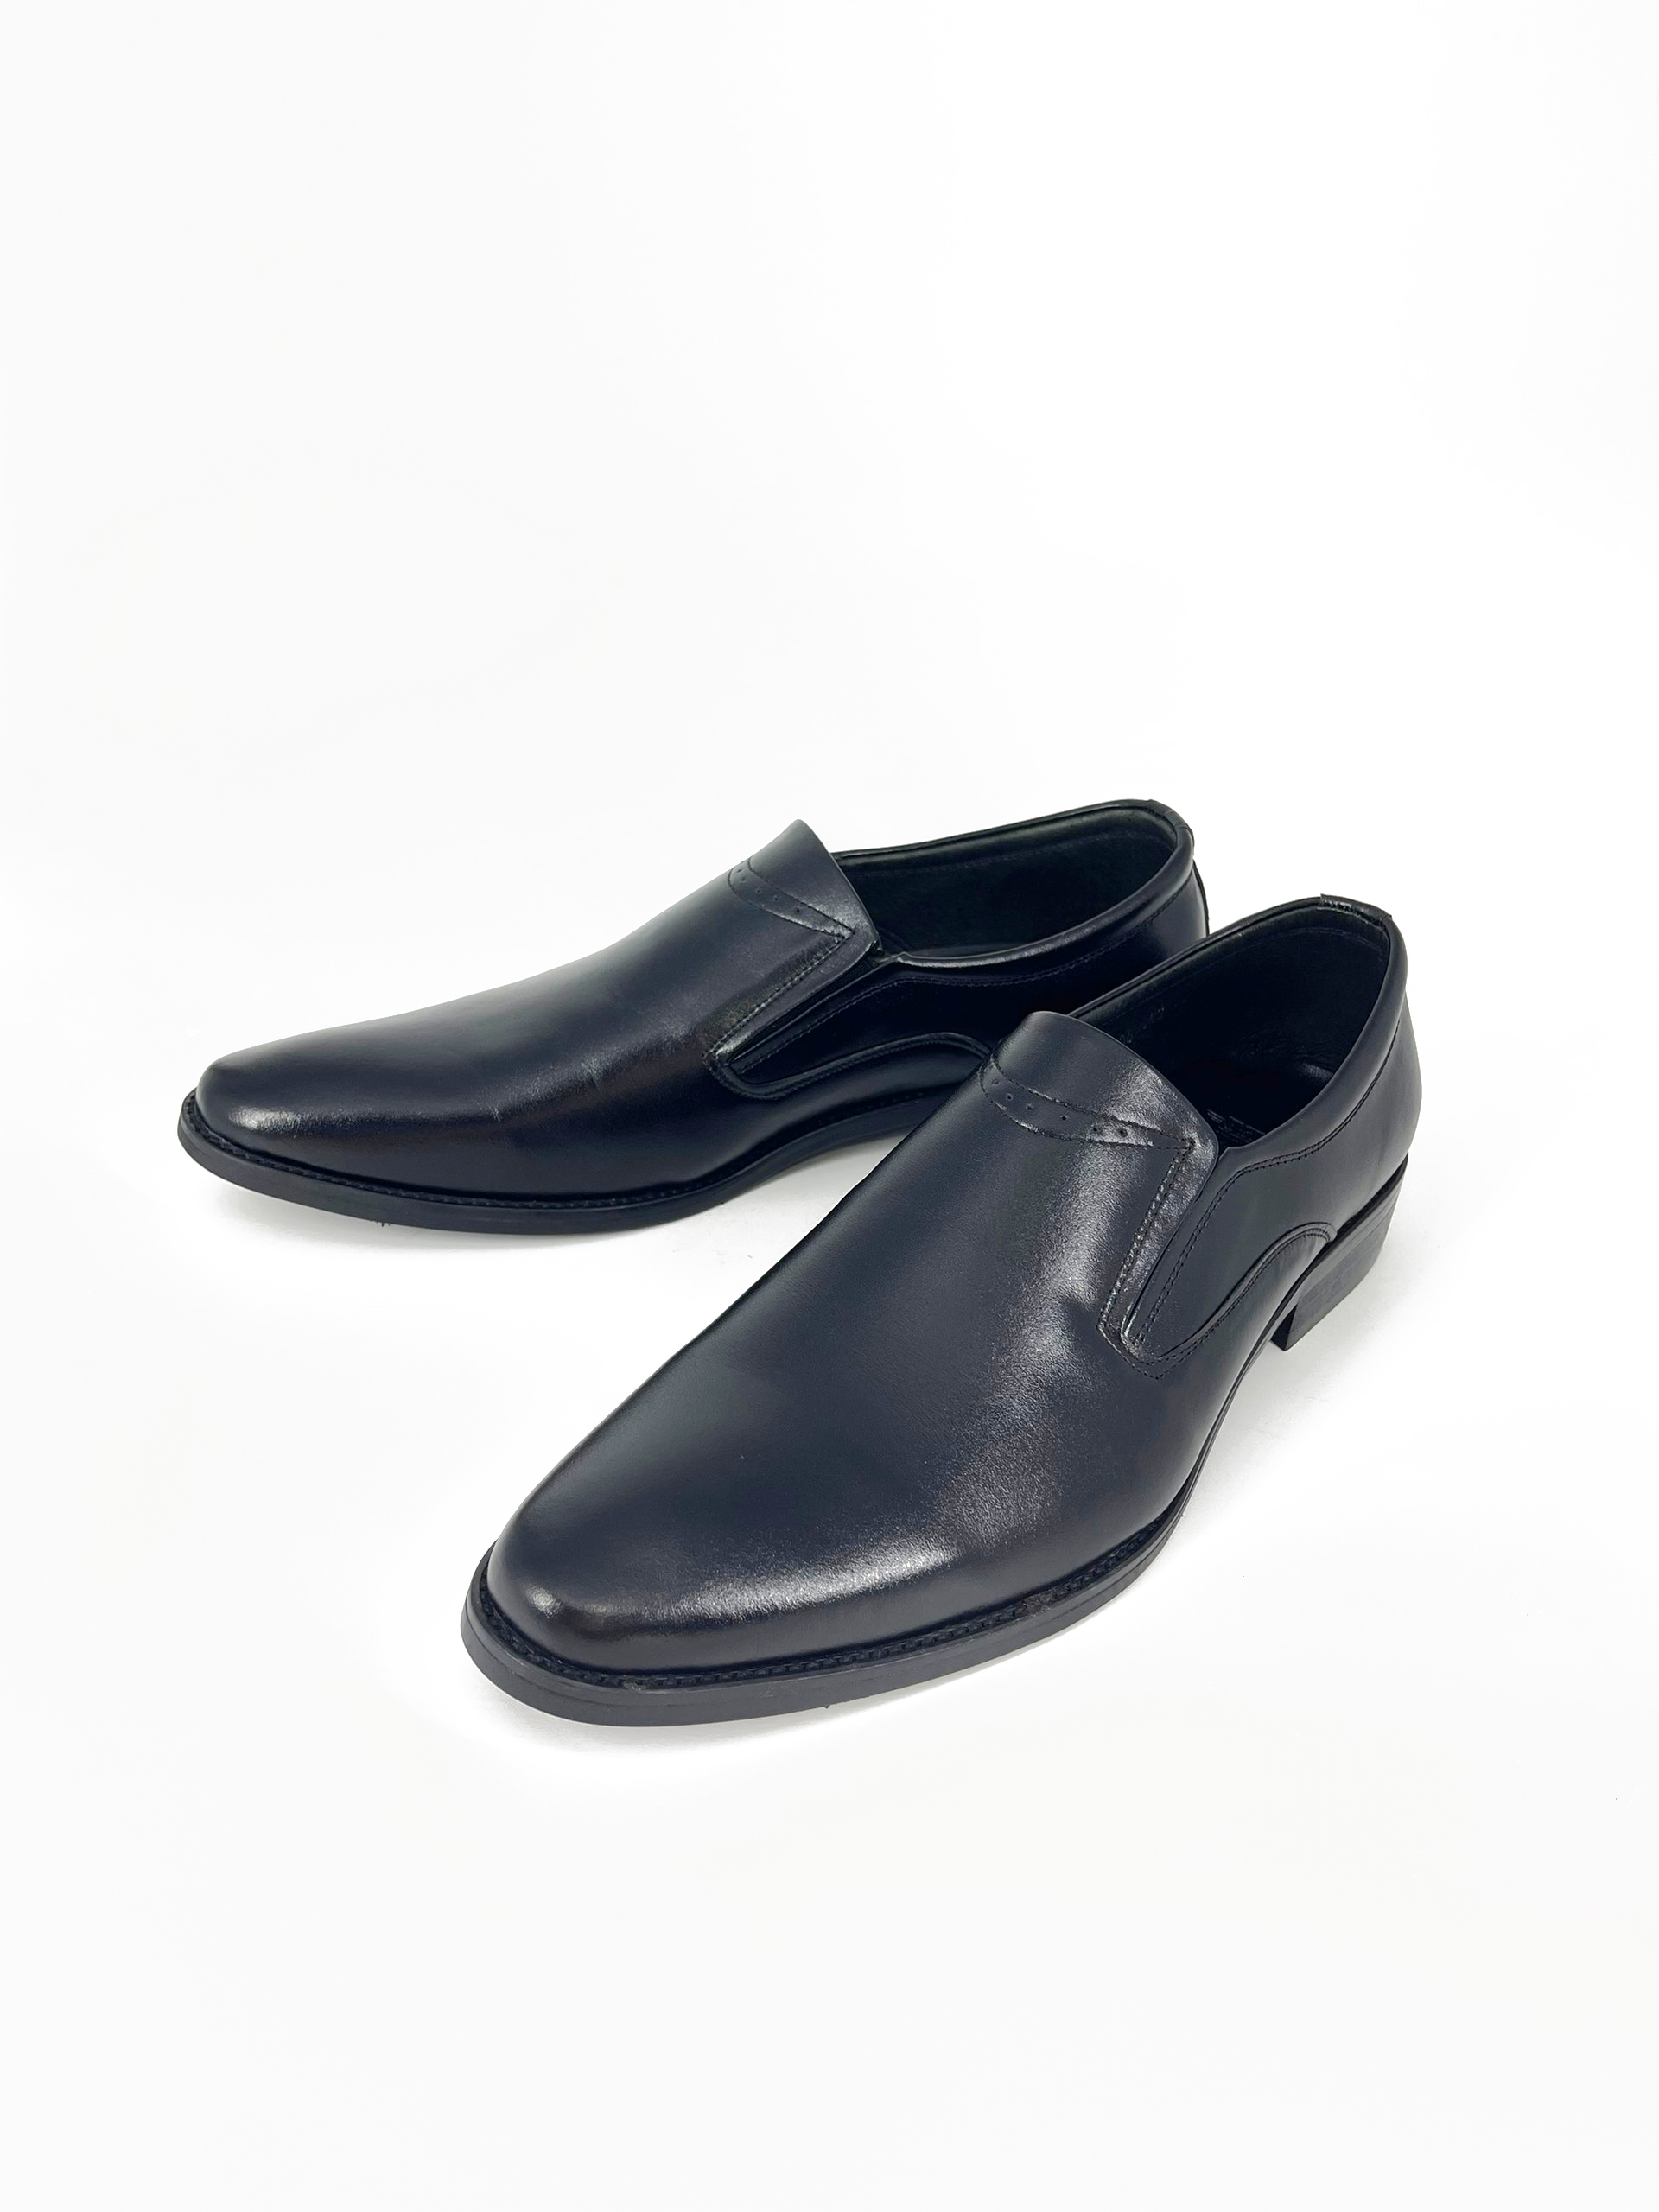 Giày Tây Lười Nam Loafer VSMAN 100% Da Bò Thật Cao Cấp Viền Trắng Ở Cổ 806 Nam Tính Trẻ Trung Hiện Đại - MTG005